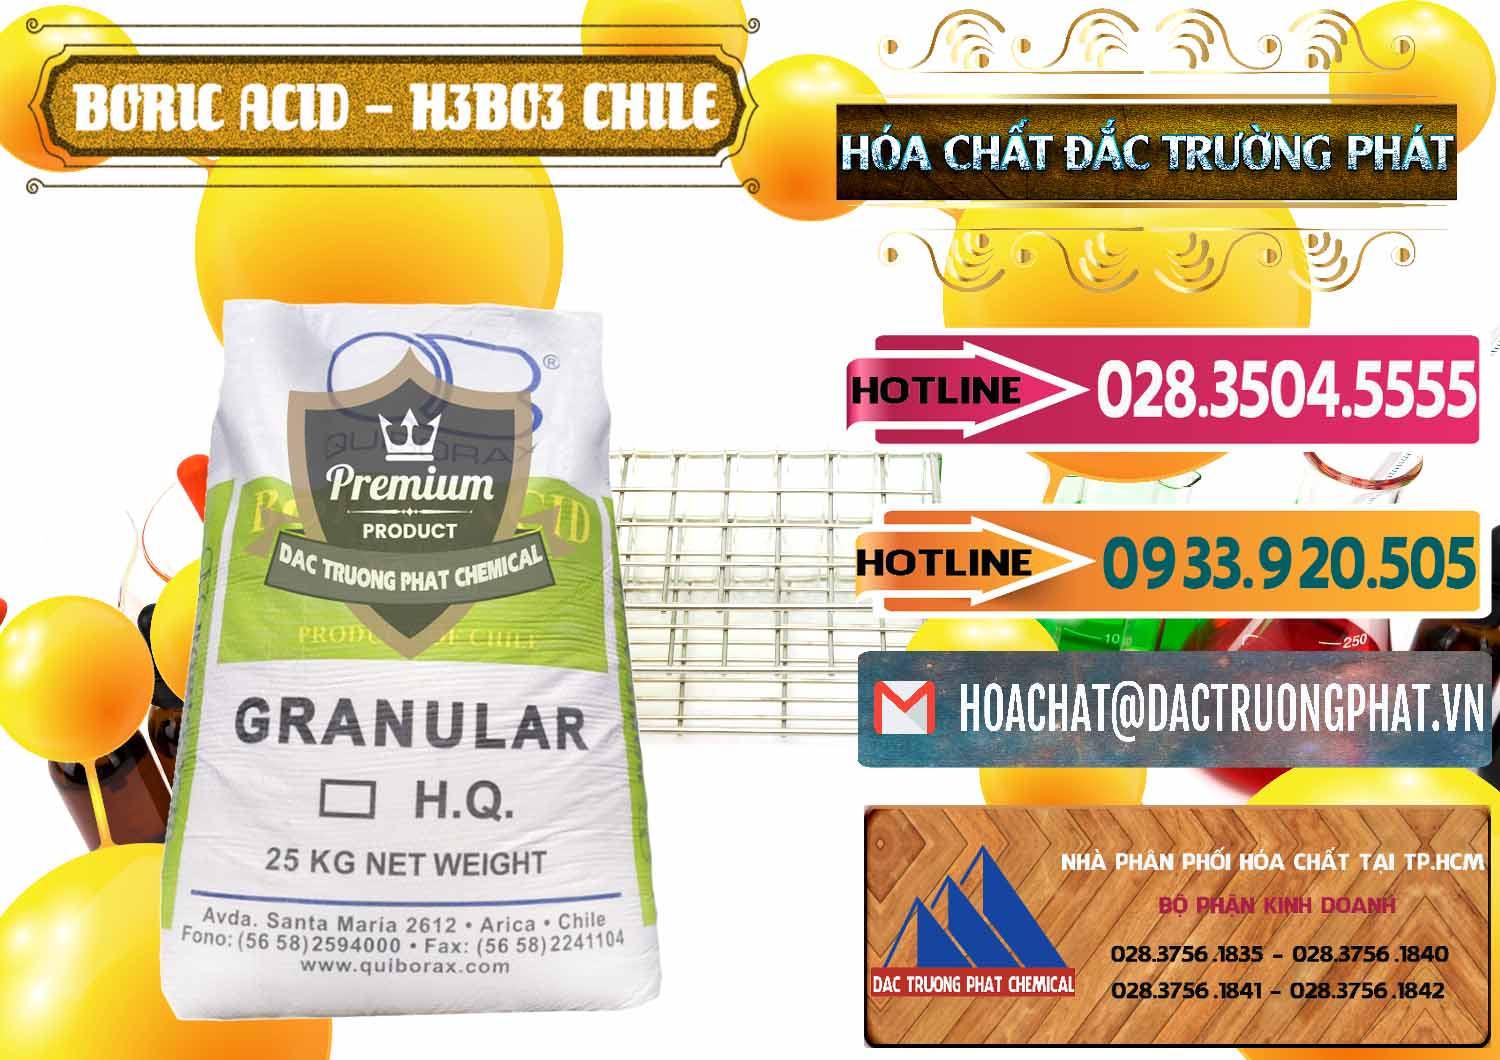 Đơn vị bán - phân phối Acid Boric – Axit Boric H3BO3 99% Quiborax Chile - 0281 - Cty chuyên phân phối ( bán ) hóa chất tại TP.HCM - dactruongphat.vn